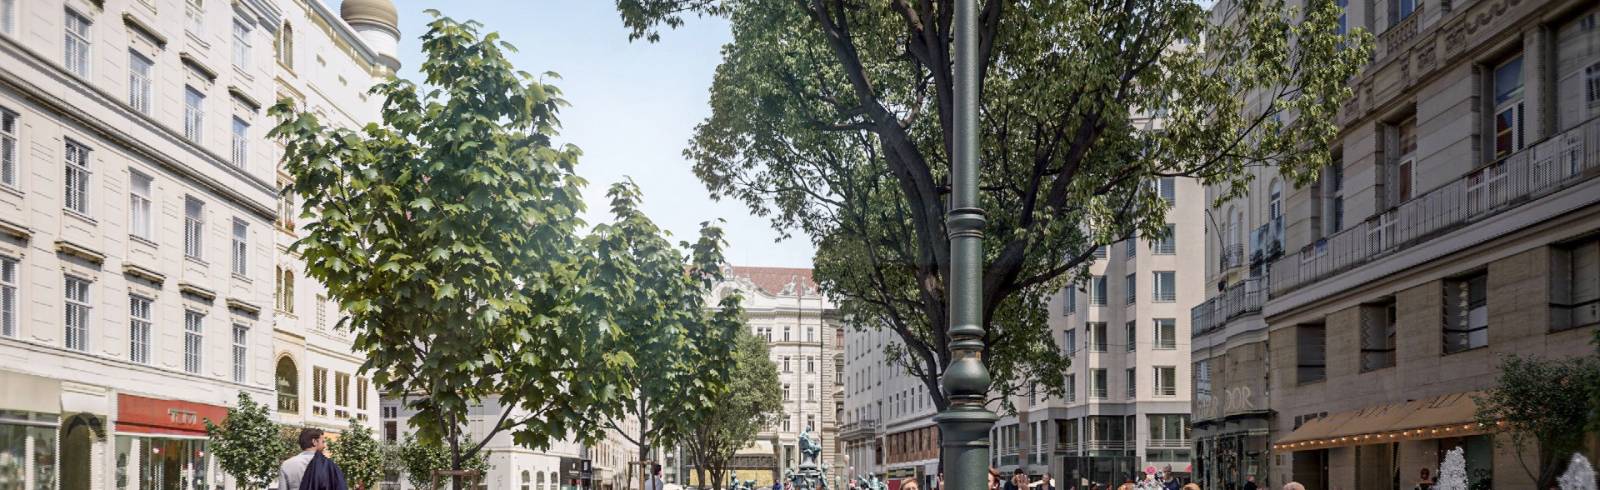 Innenstadt: Neuer Markt bekommt alte Bäume